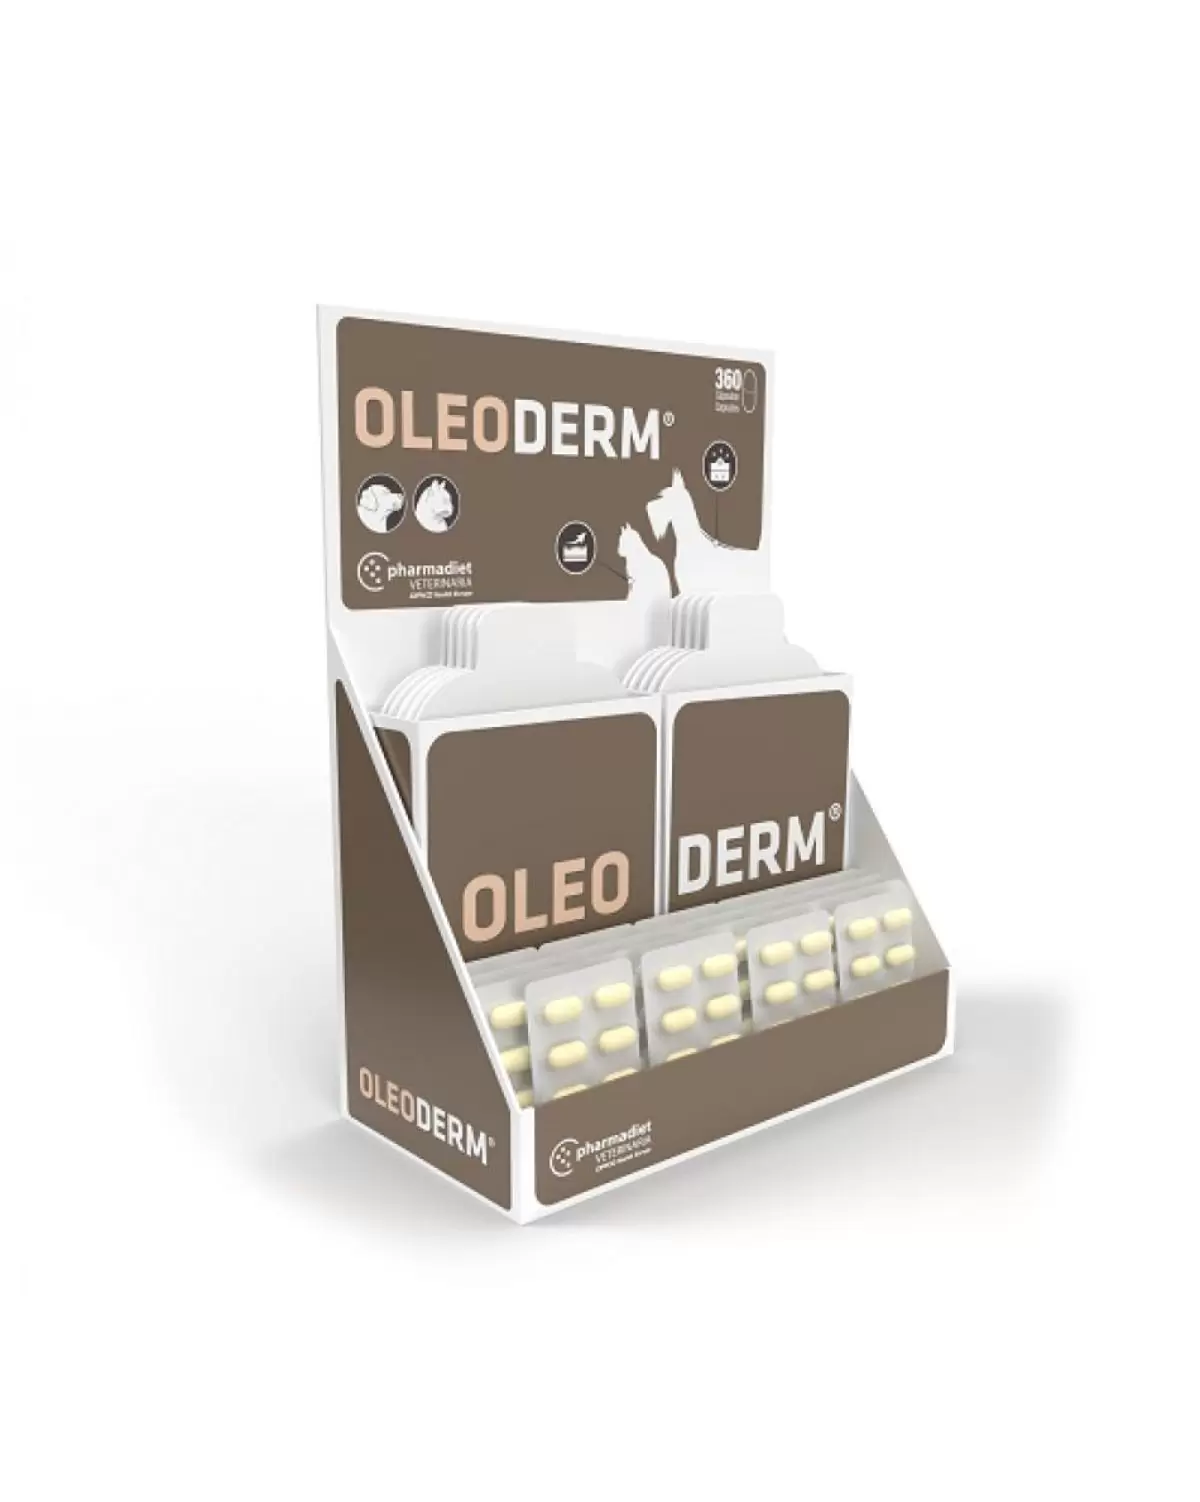 Oleoderm Cápsulas es un complemento alimenticio, en cápsulas, con nutrientes que ayudan a mantener la piel y el pelaje de tu perro sanos, apto para perros y gatos.